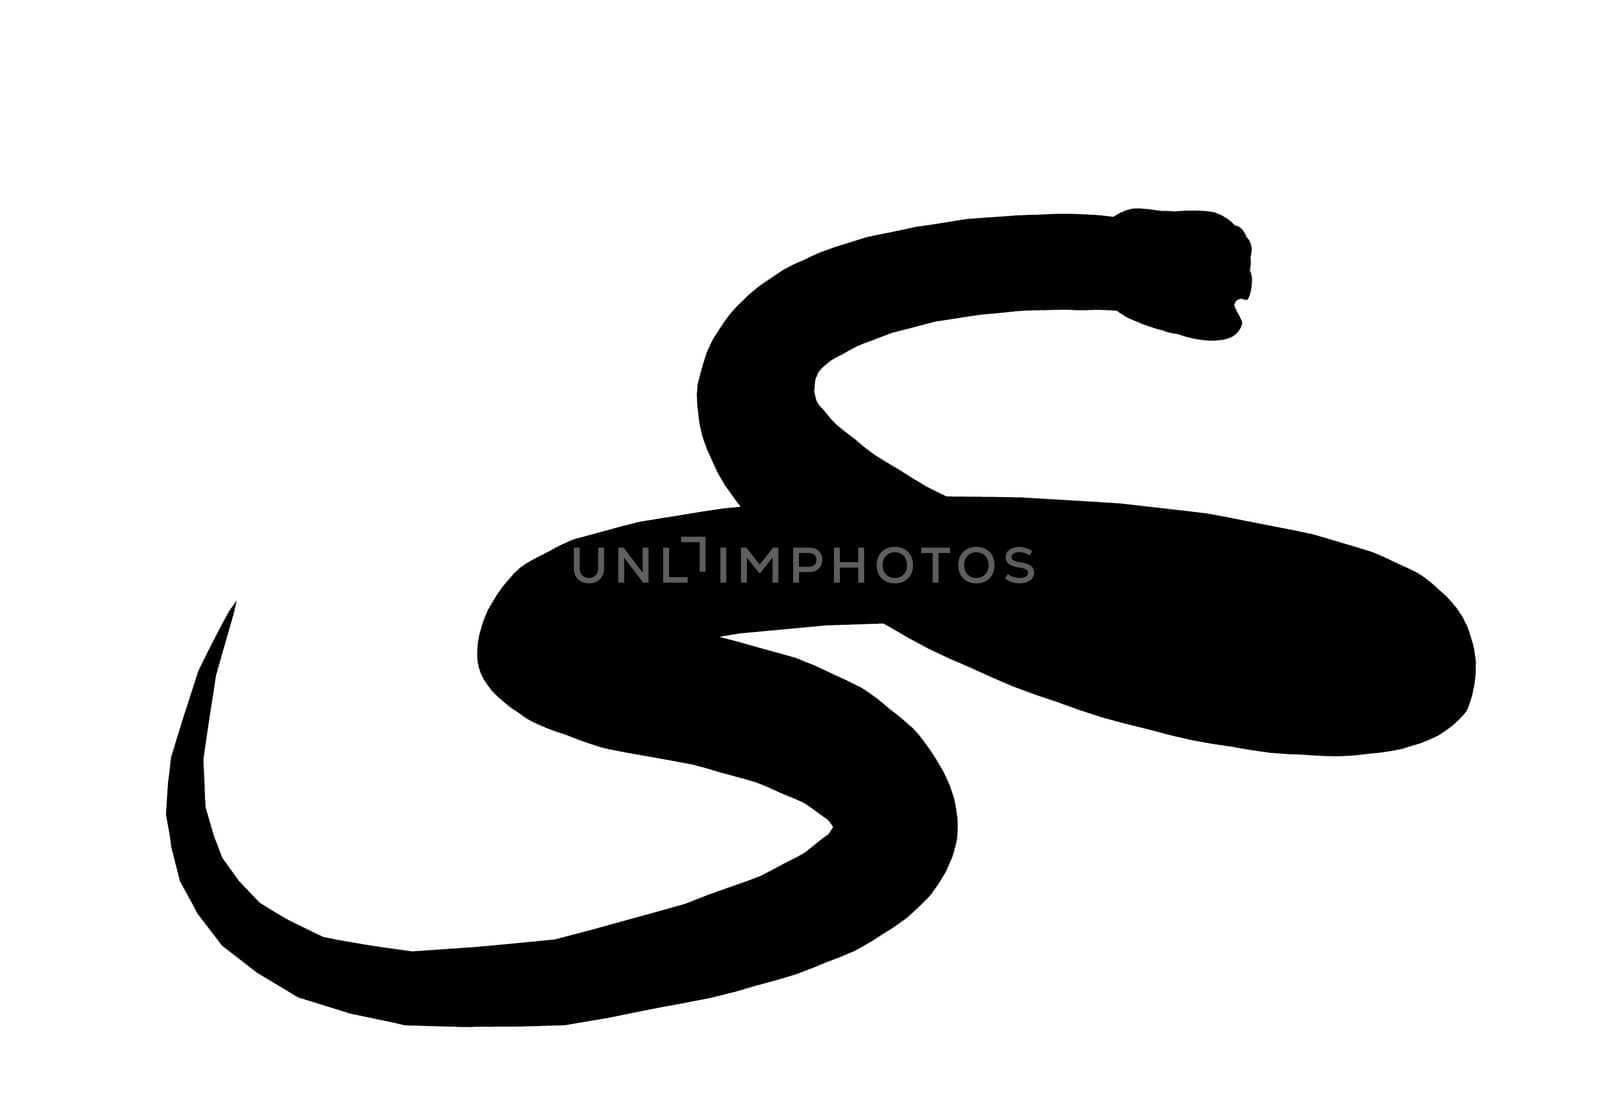 Black snake art illustration silhouette on a white background